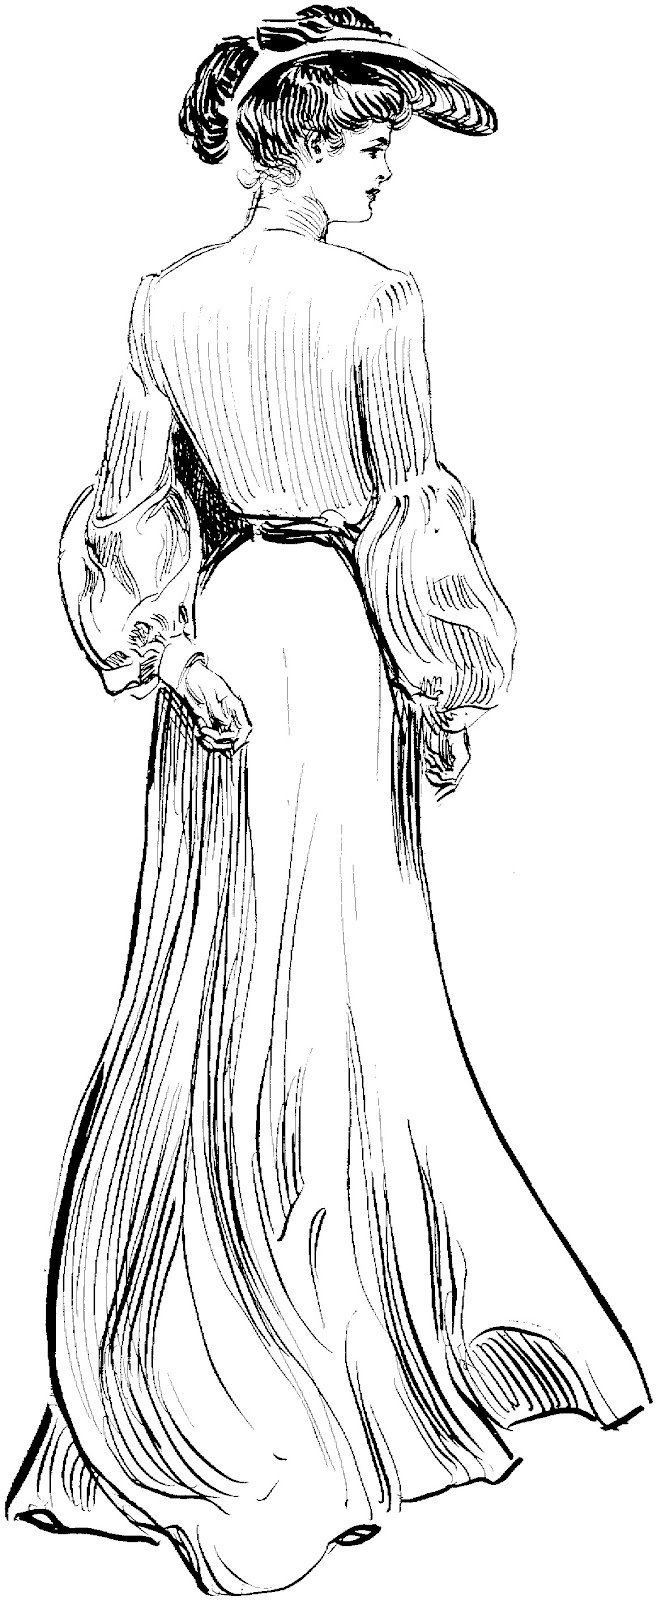 Девушка в платье 19 века рисунок - 92 фото